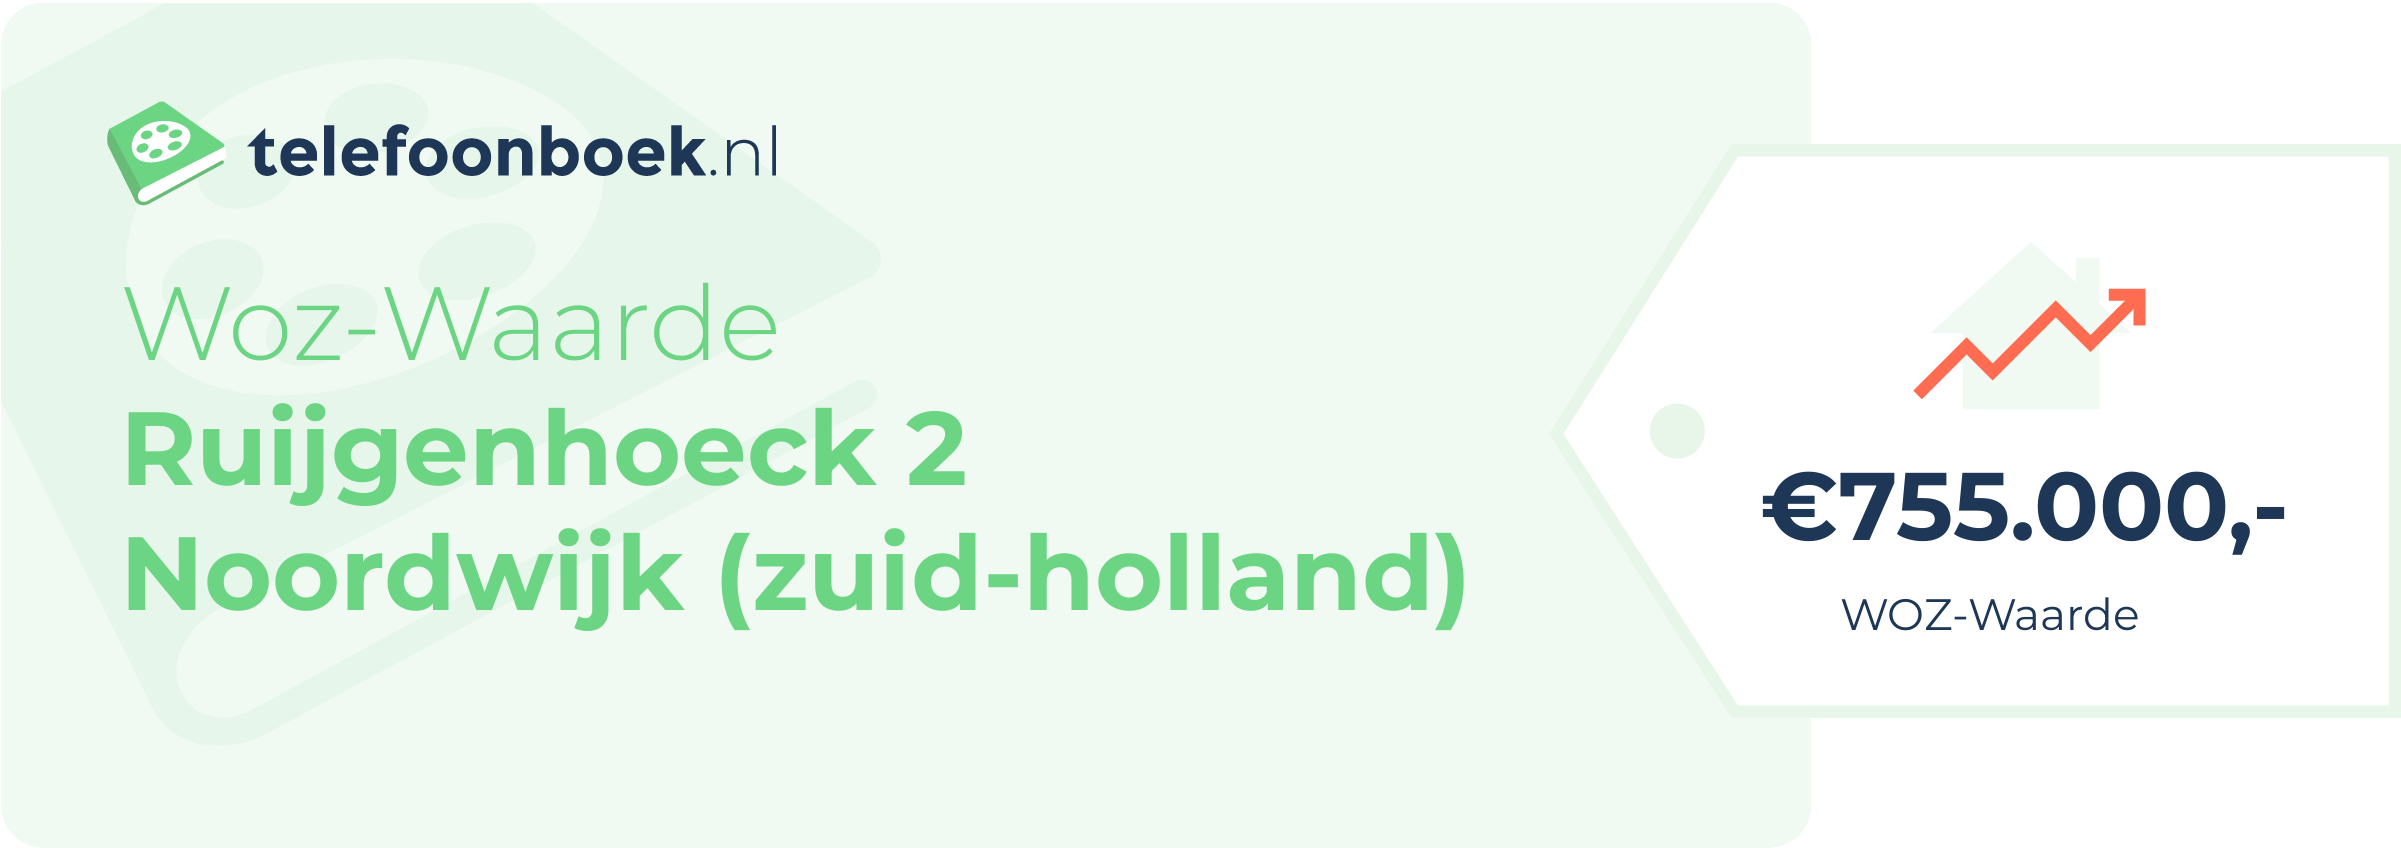 WOZ-waarde Ruijgenhoeck 2 Noordwijk (Zuid-Holland)